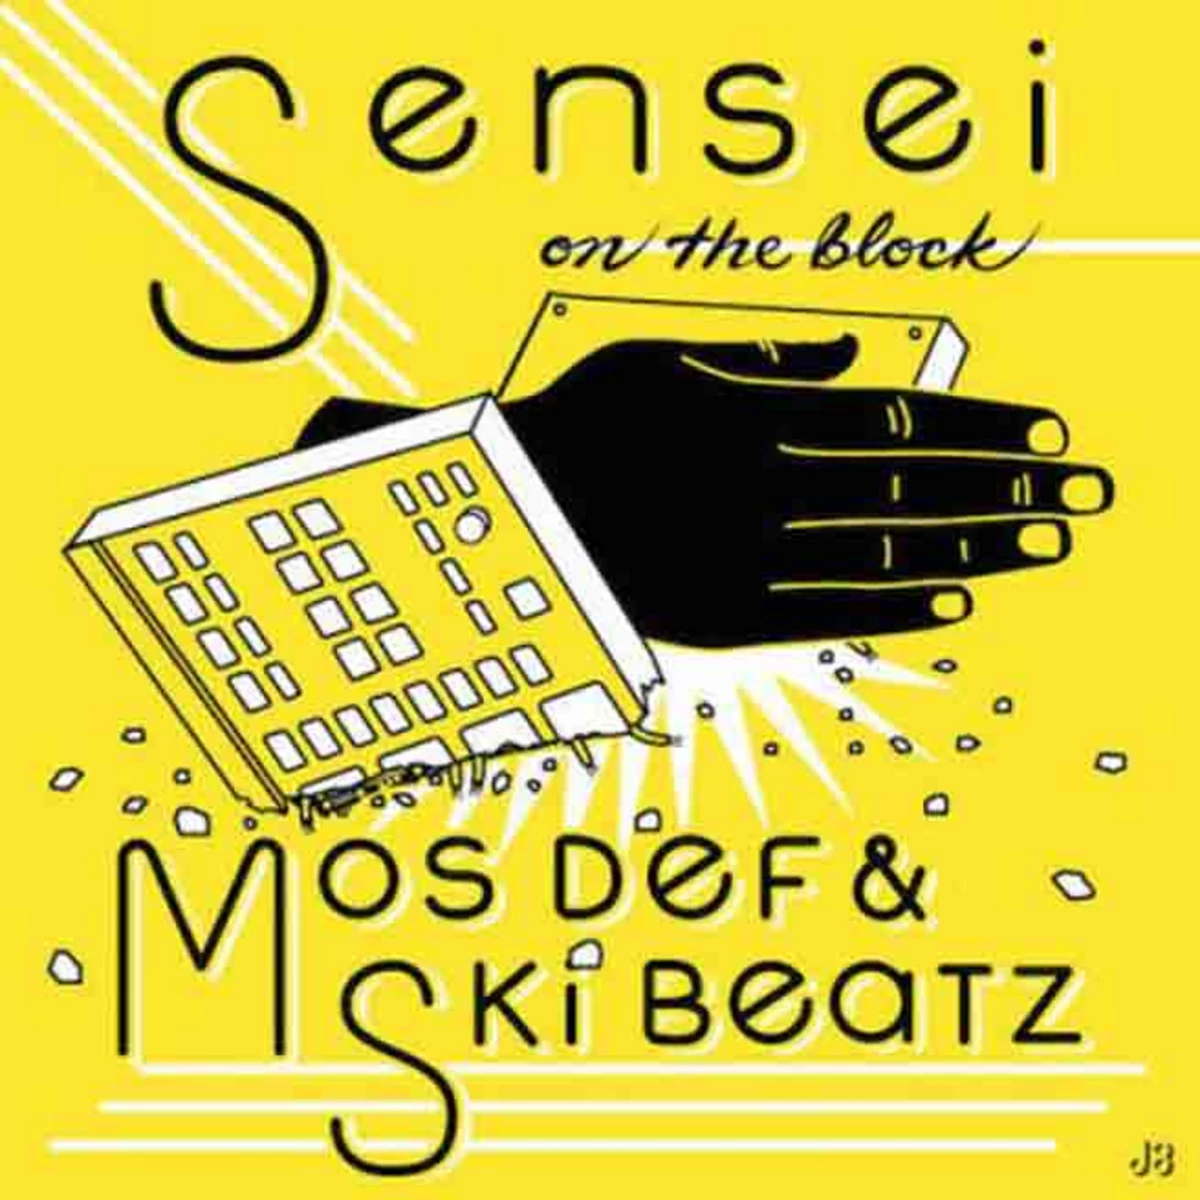 Listen to Mos Def, "Sensei On The Block" - XXL